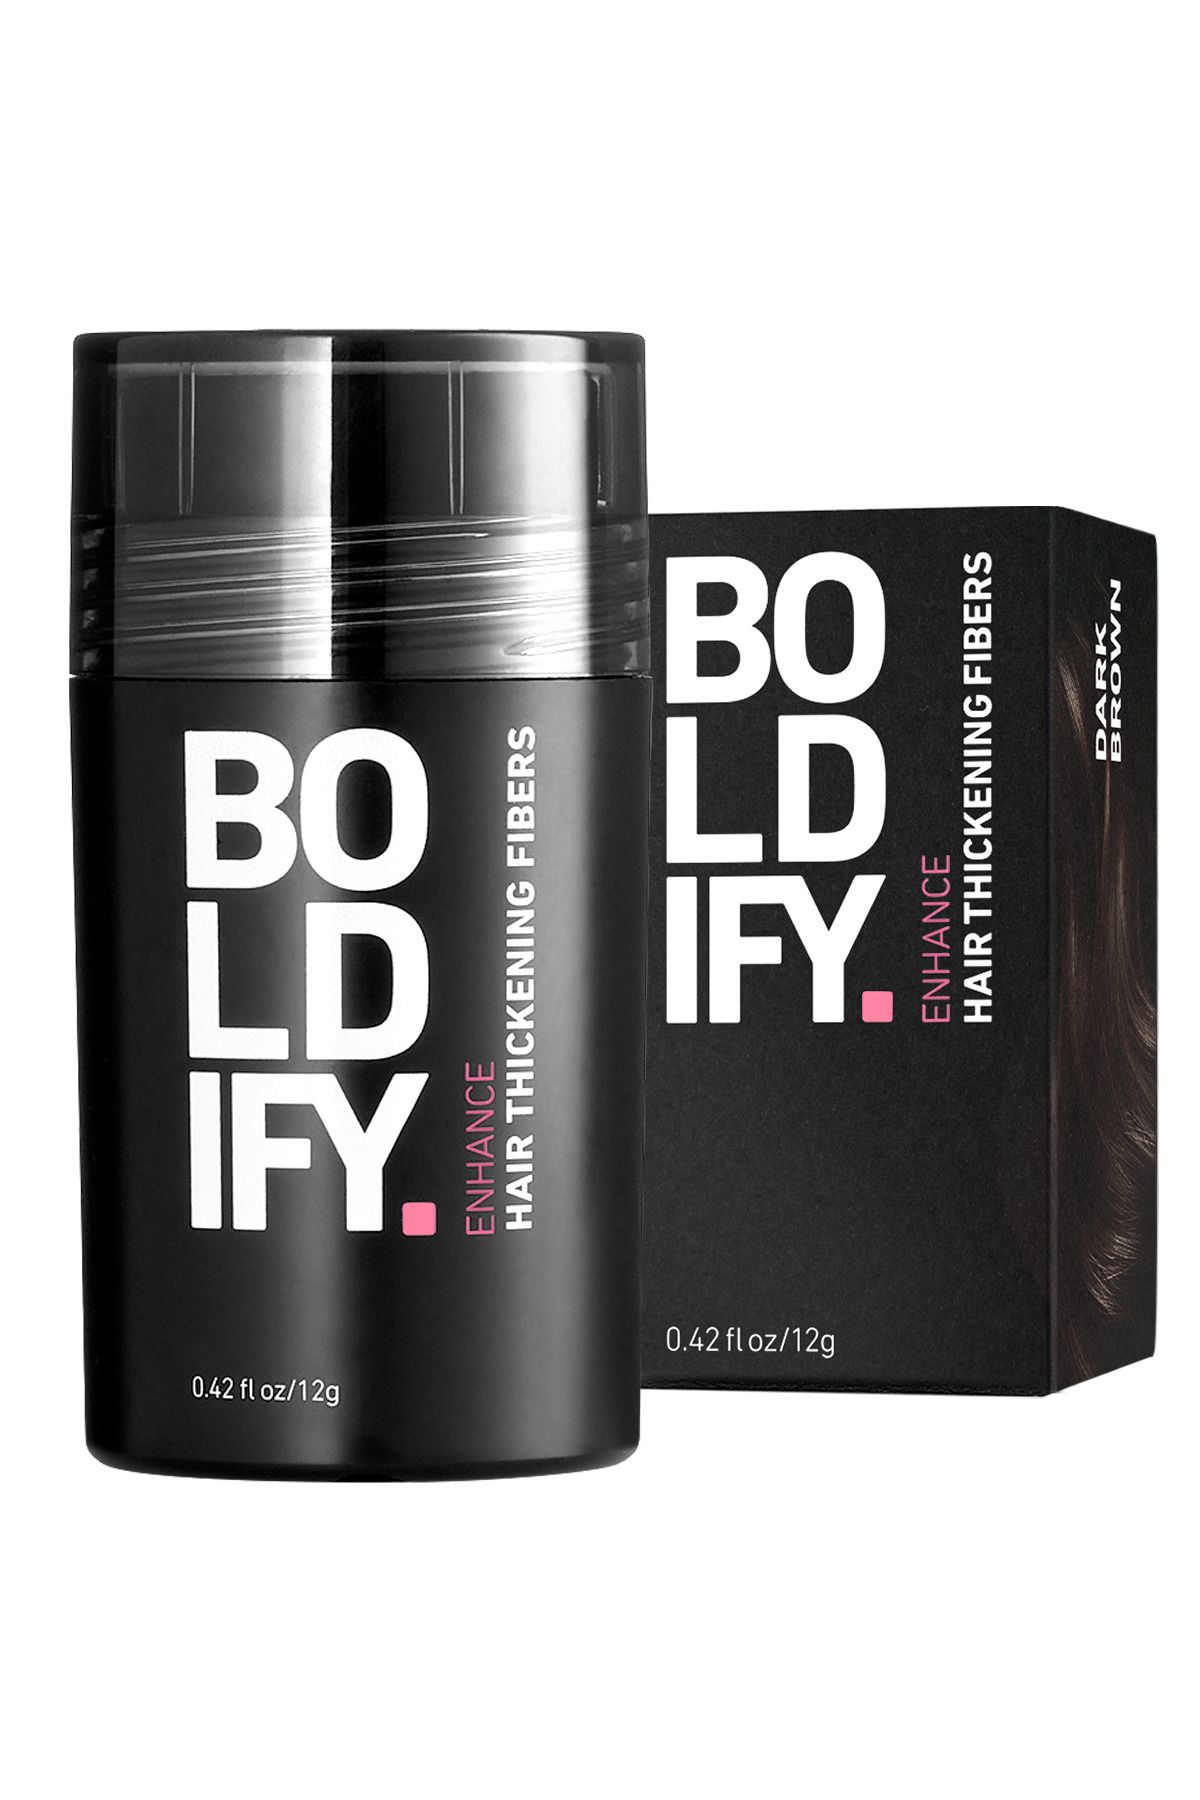 Boldify Saç Dolgunlaştırıcı Fiber, Topik Tozu Koyu Kahve 12 gr- Hair Building Fibers